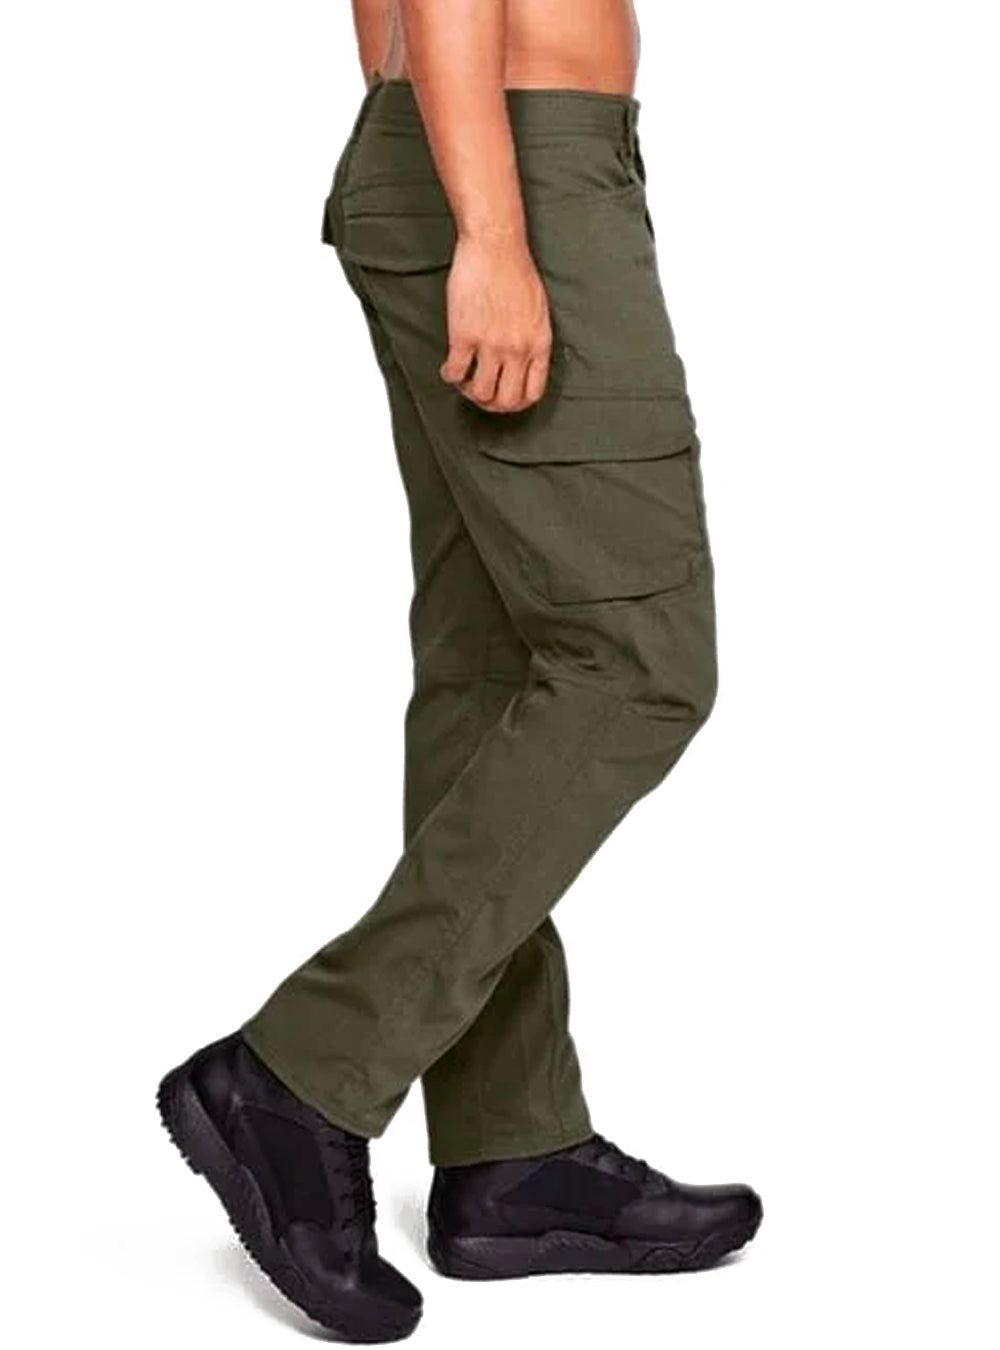 Under Armour Enduro Cargo Pants - Green - TacSource Tactical Gear